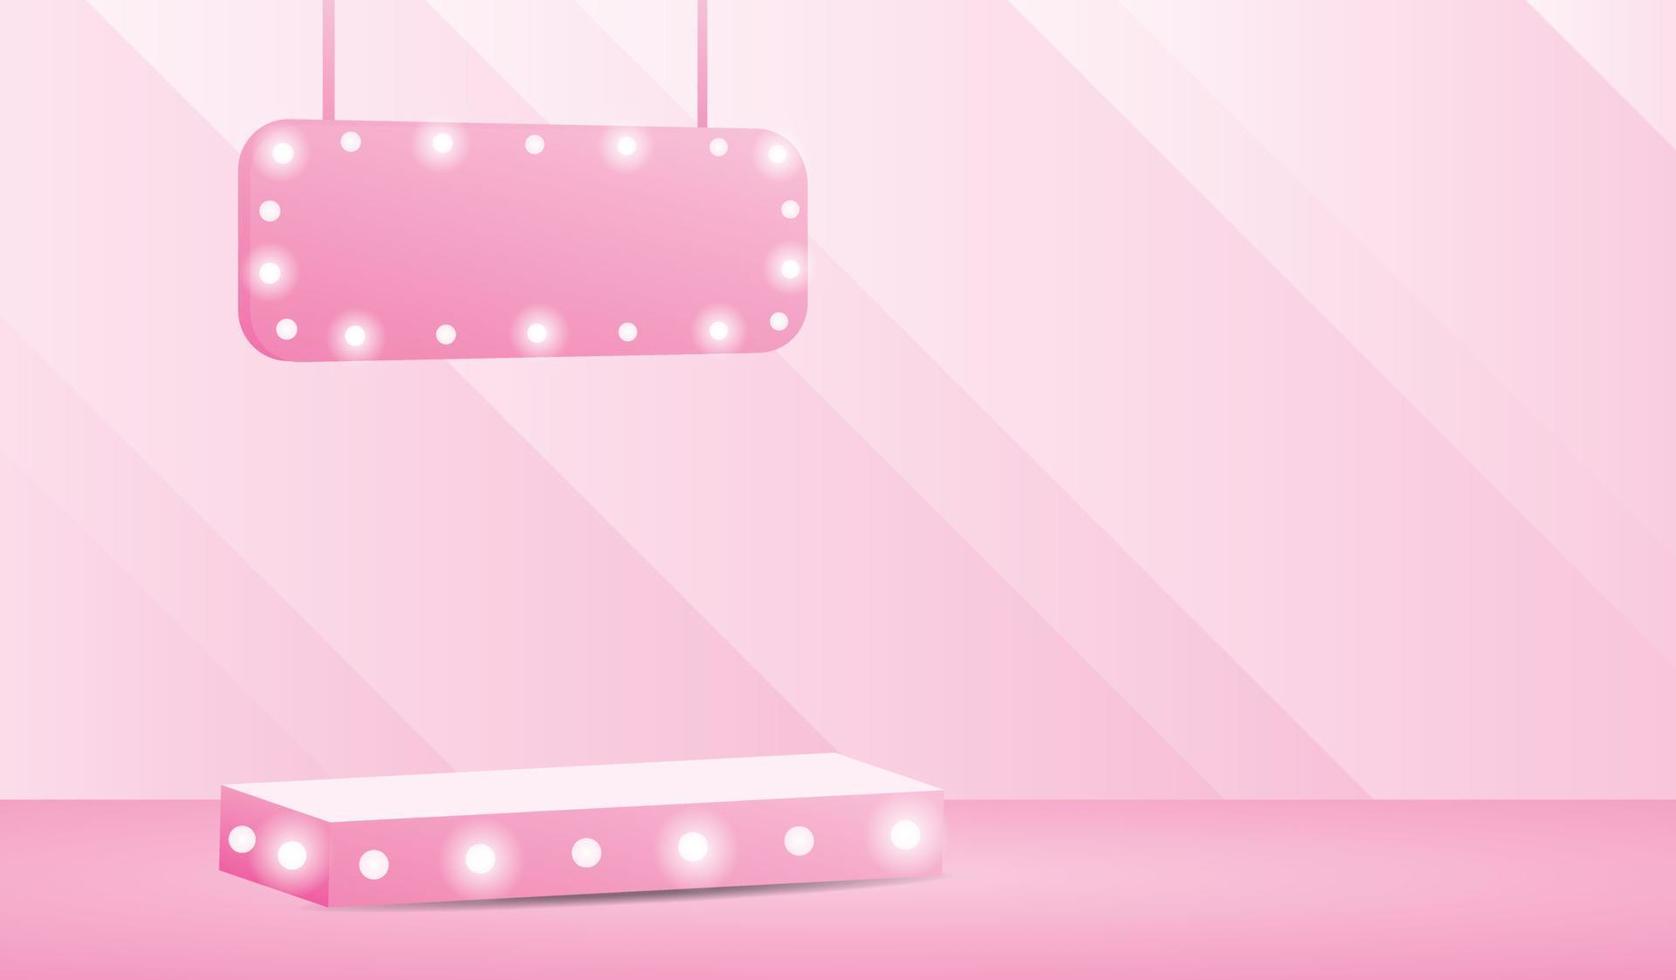 affichage de podium d'ampoule rose avec signe suspendu vecteur d'illustration 3d pour mettre votre objet